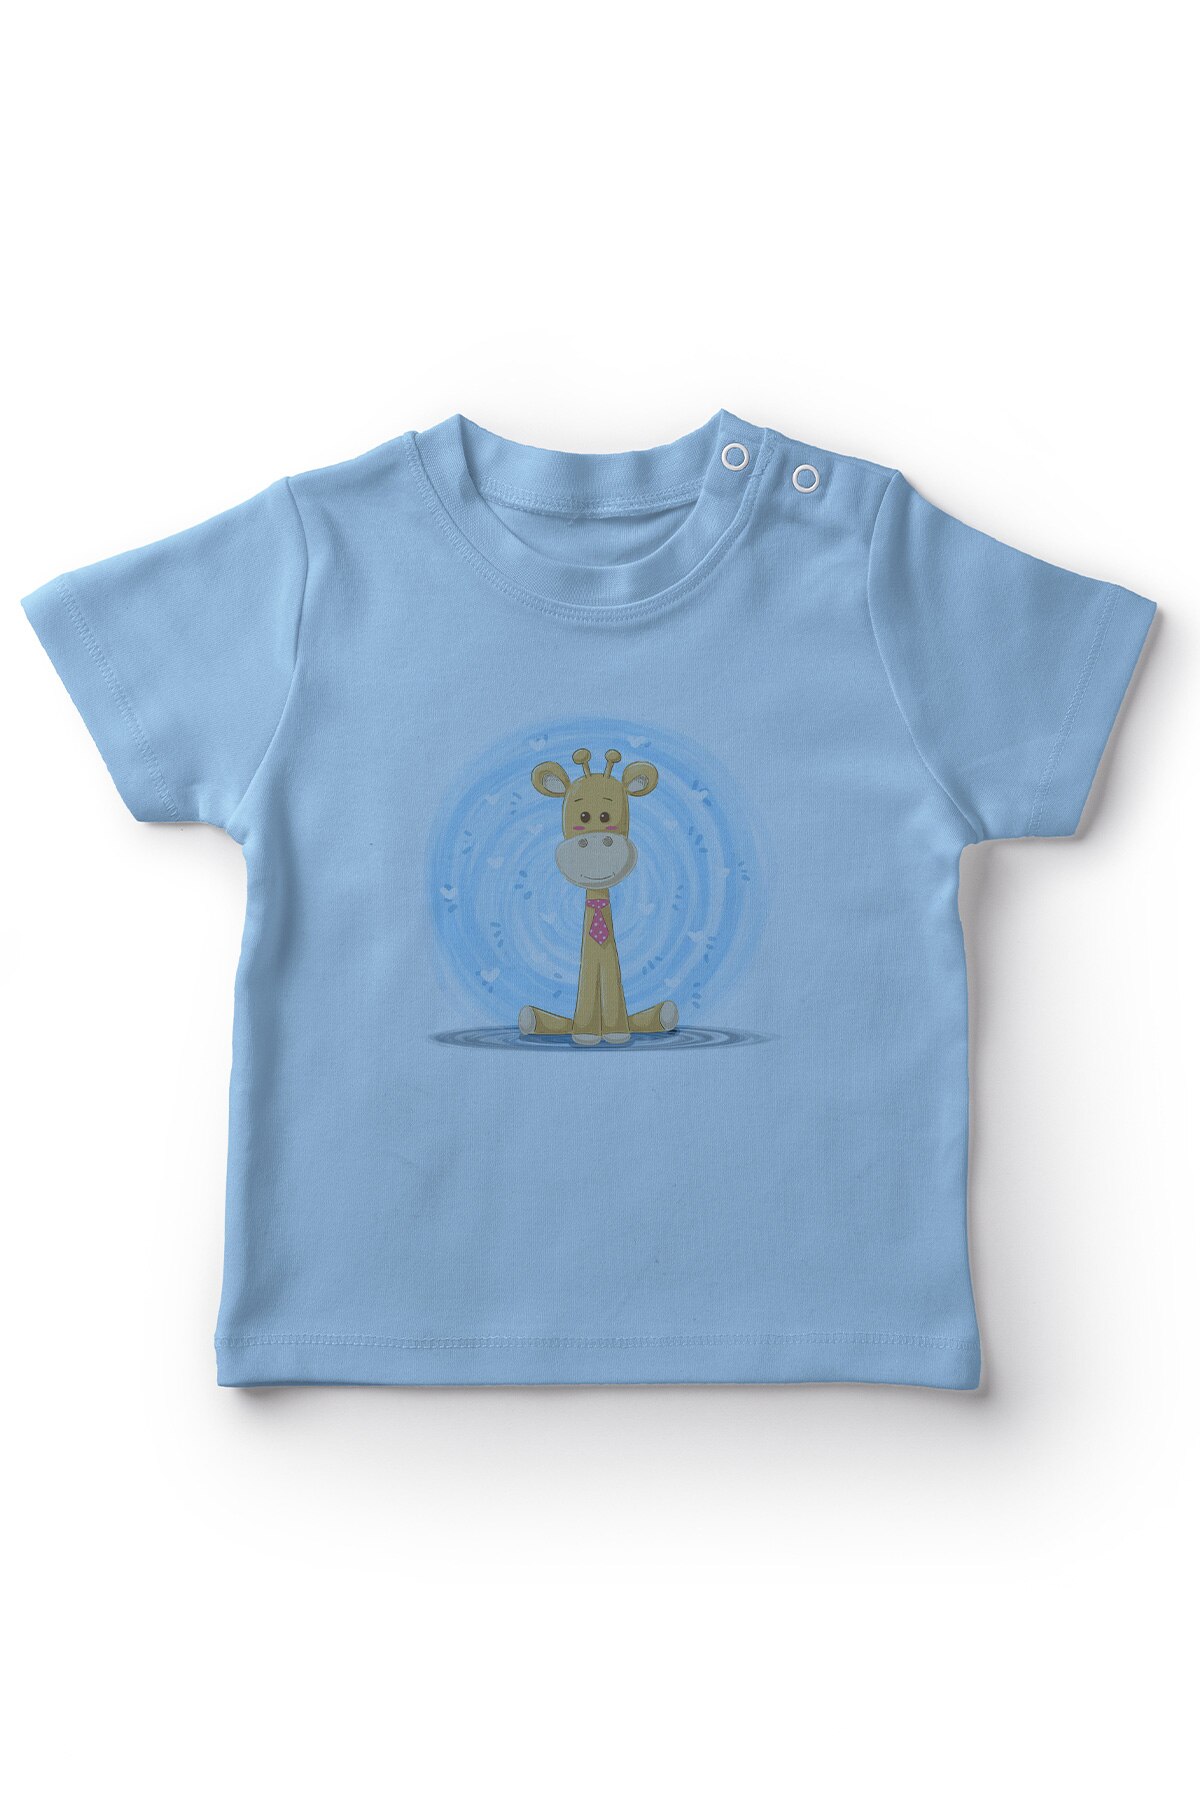 Angemiel baby slipsbærer giraf drenge baby t-shirt blå